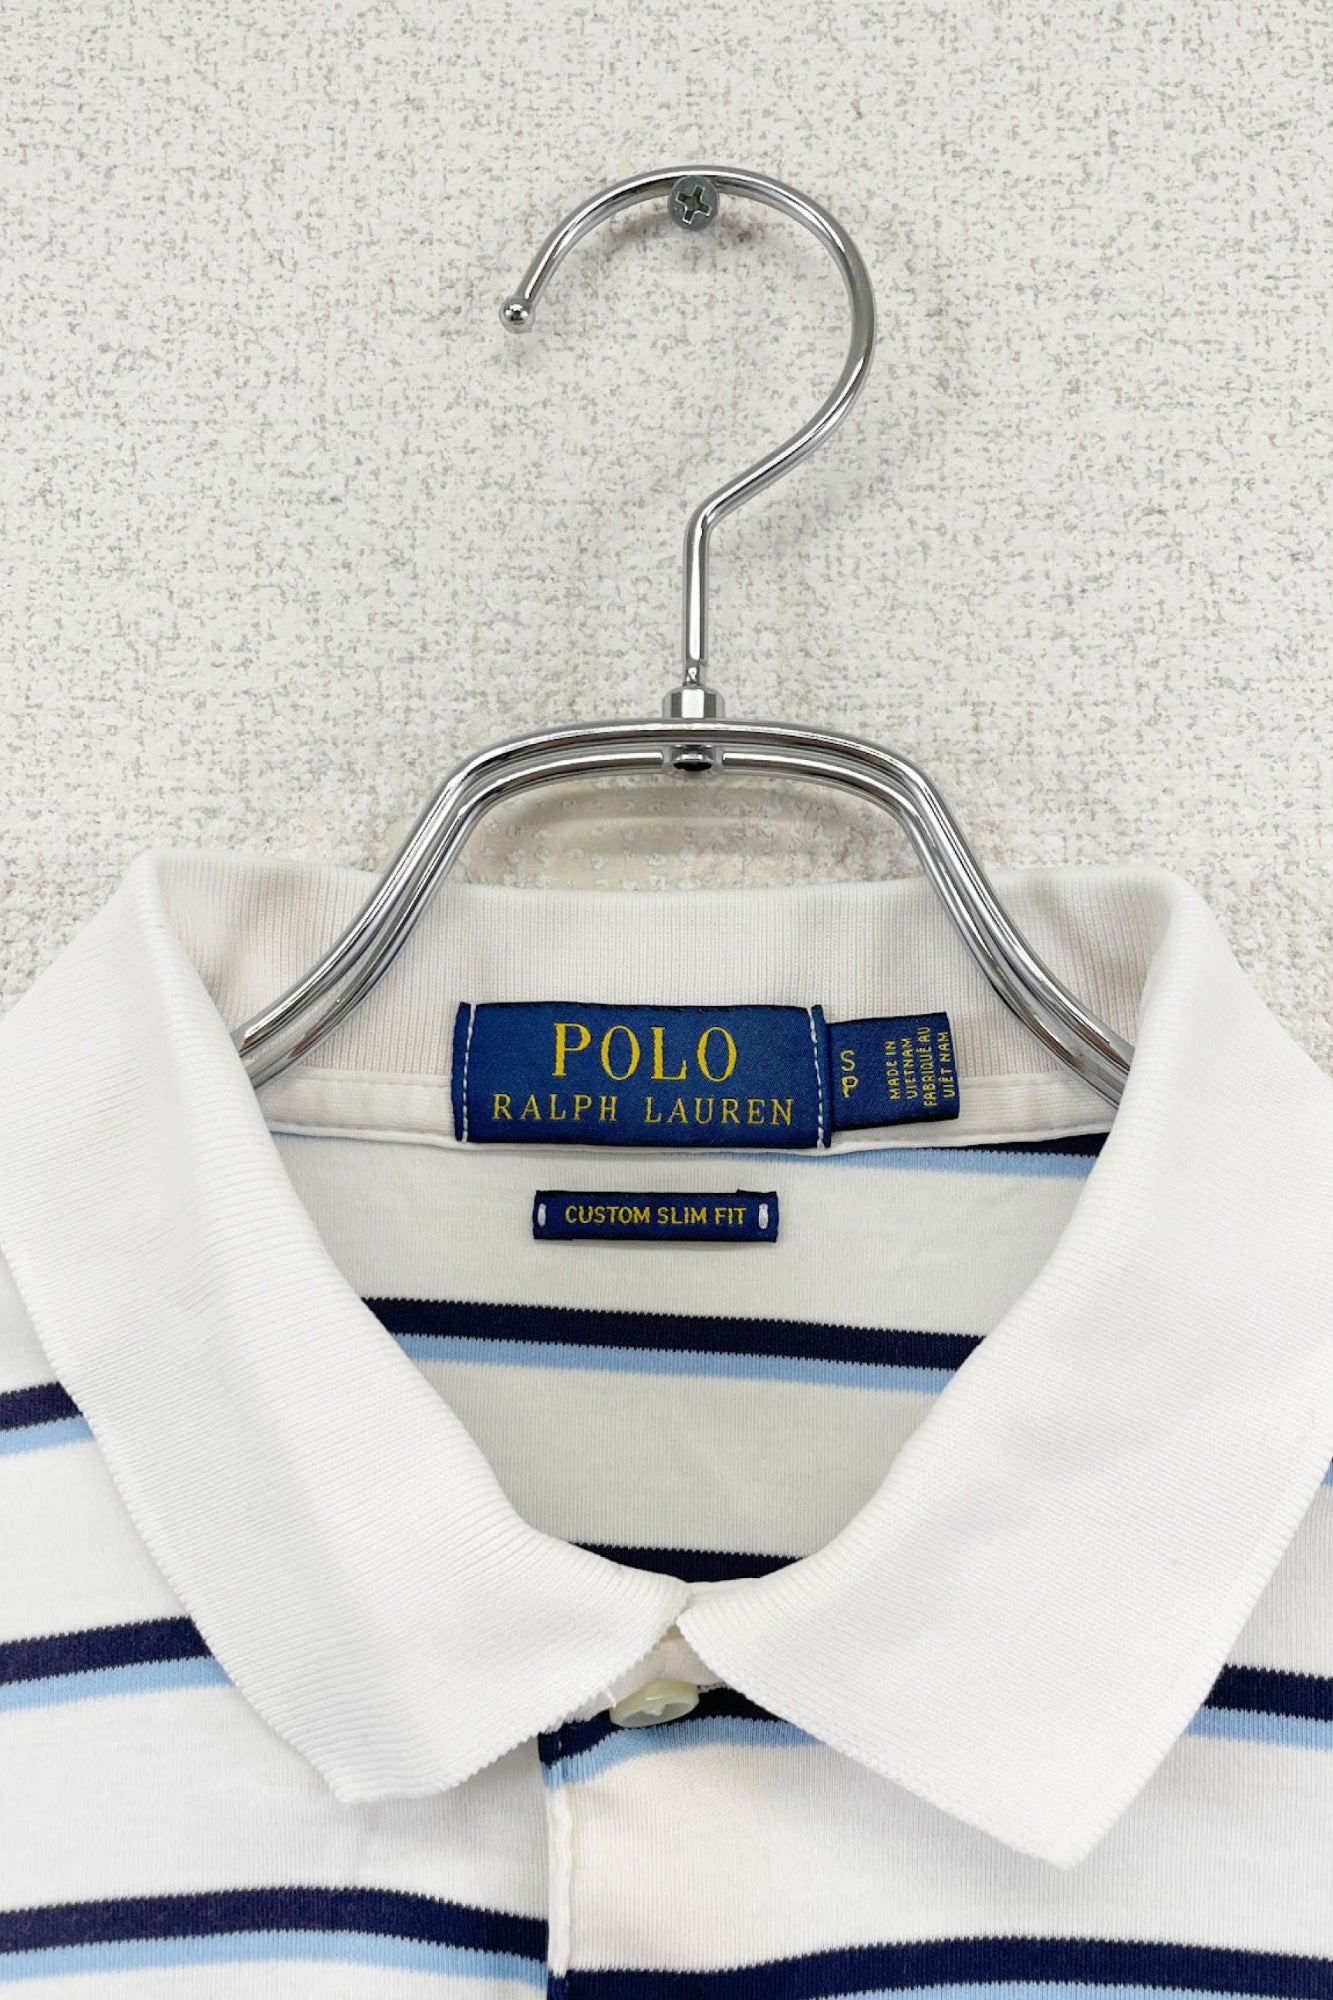 POLO RALPH LAUREN polo shirt